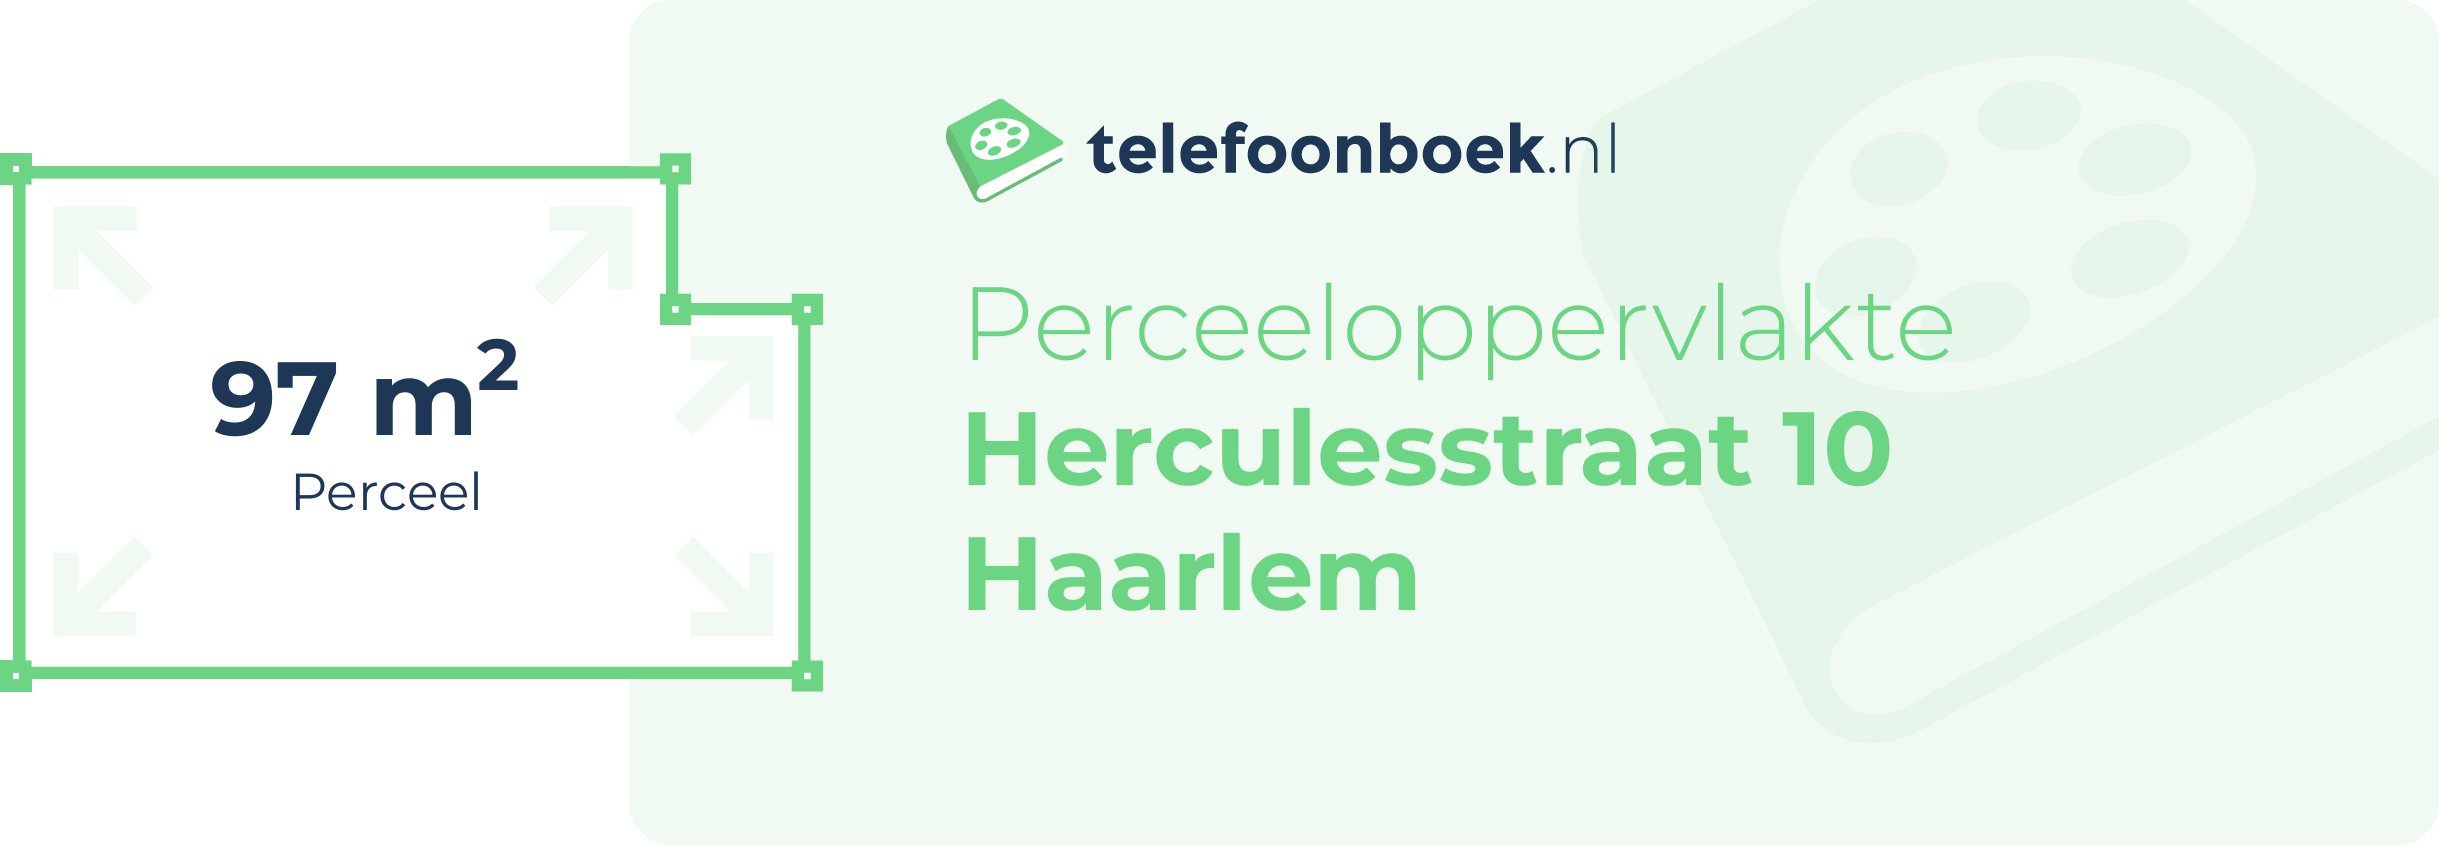 Perceeloppervlakte Herculesstraat 10 Haarlem